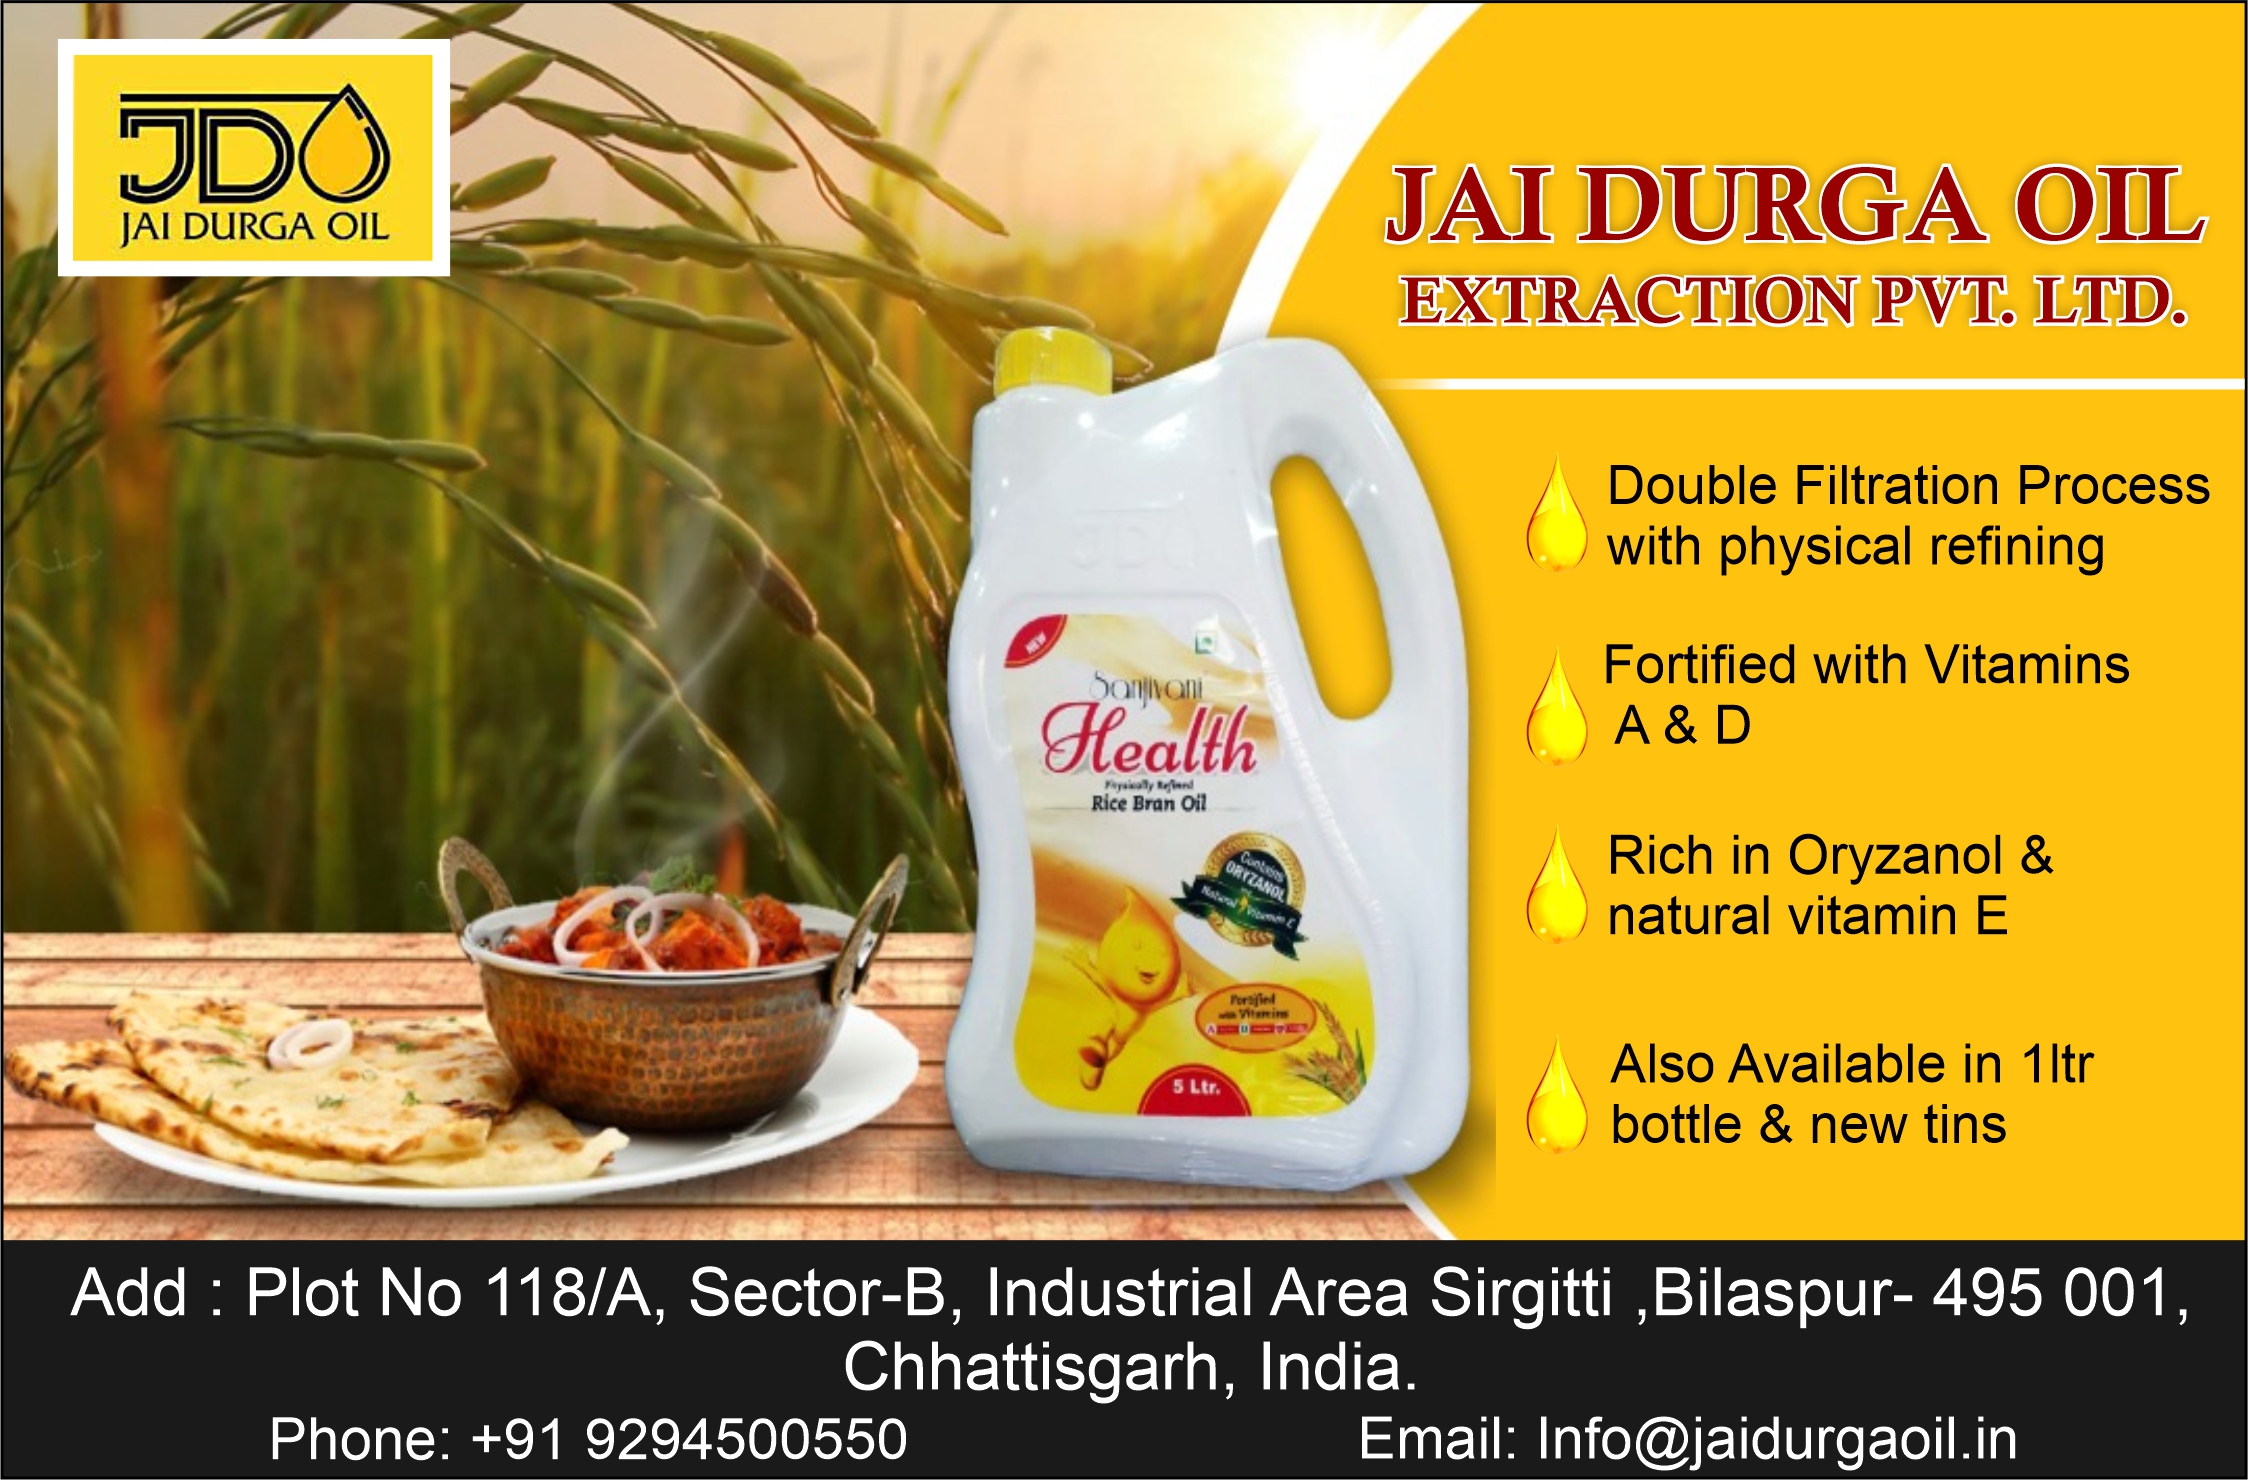 Jai Durga Oil Extraction Pvt. Ltd.